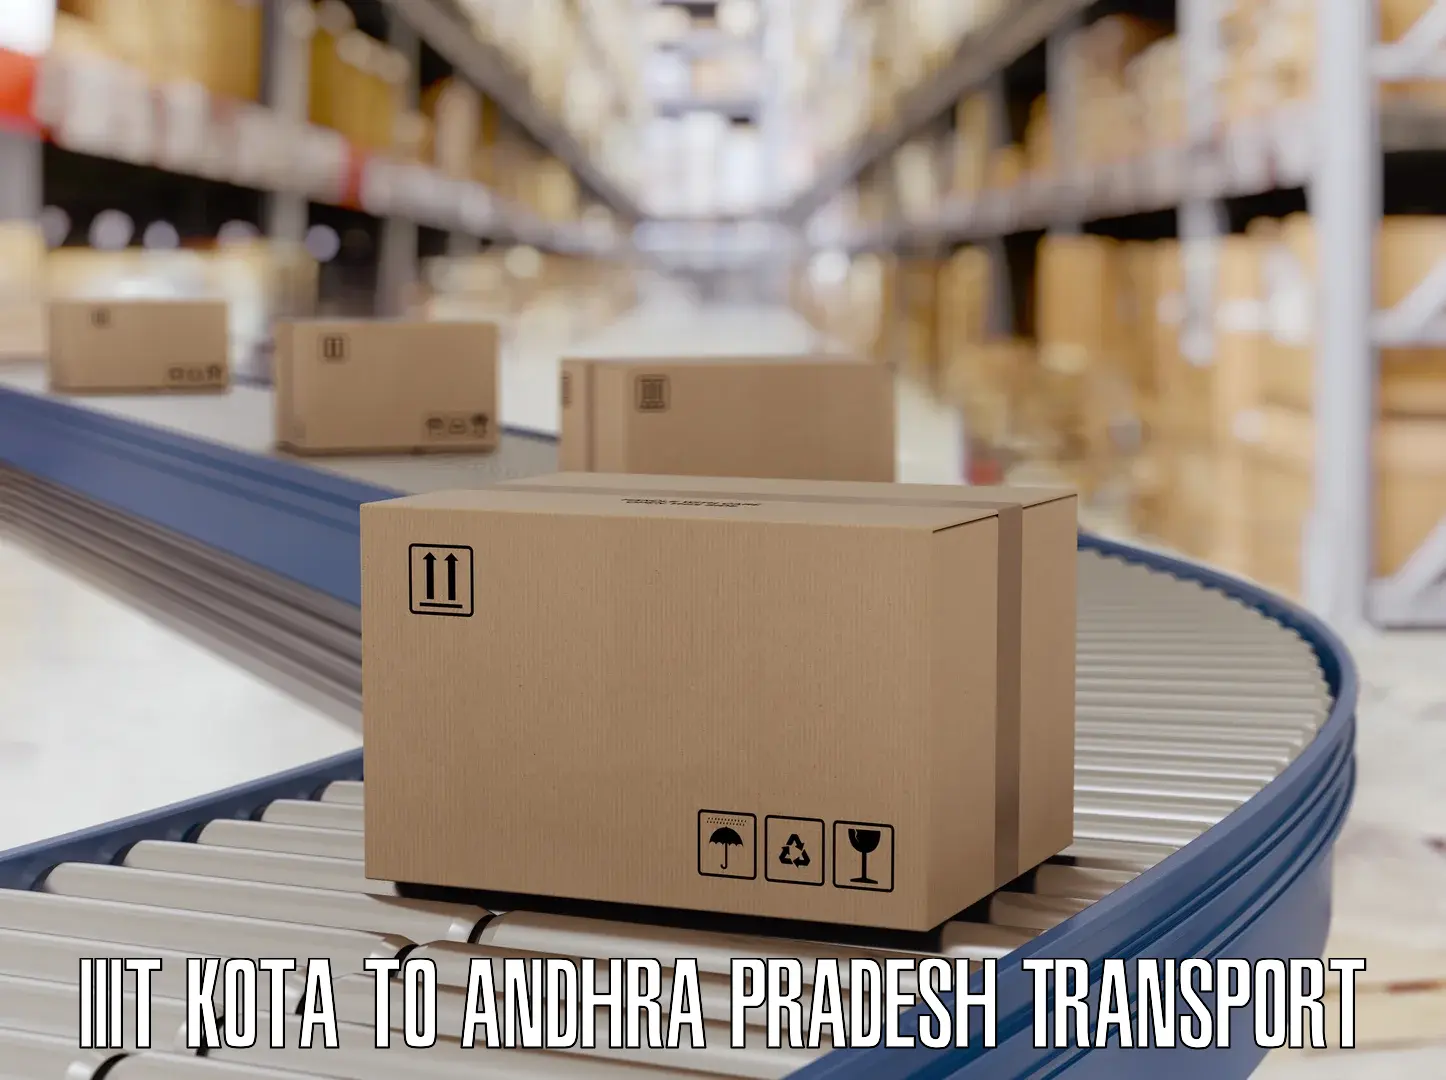 Land transport services IIIT Kota to Andhra Pradesh